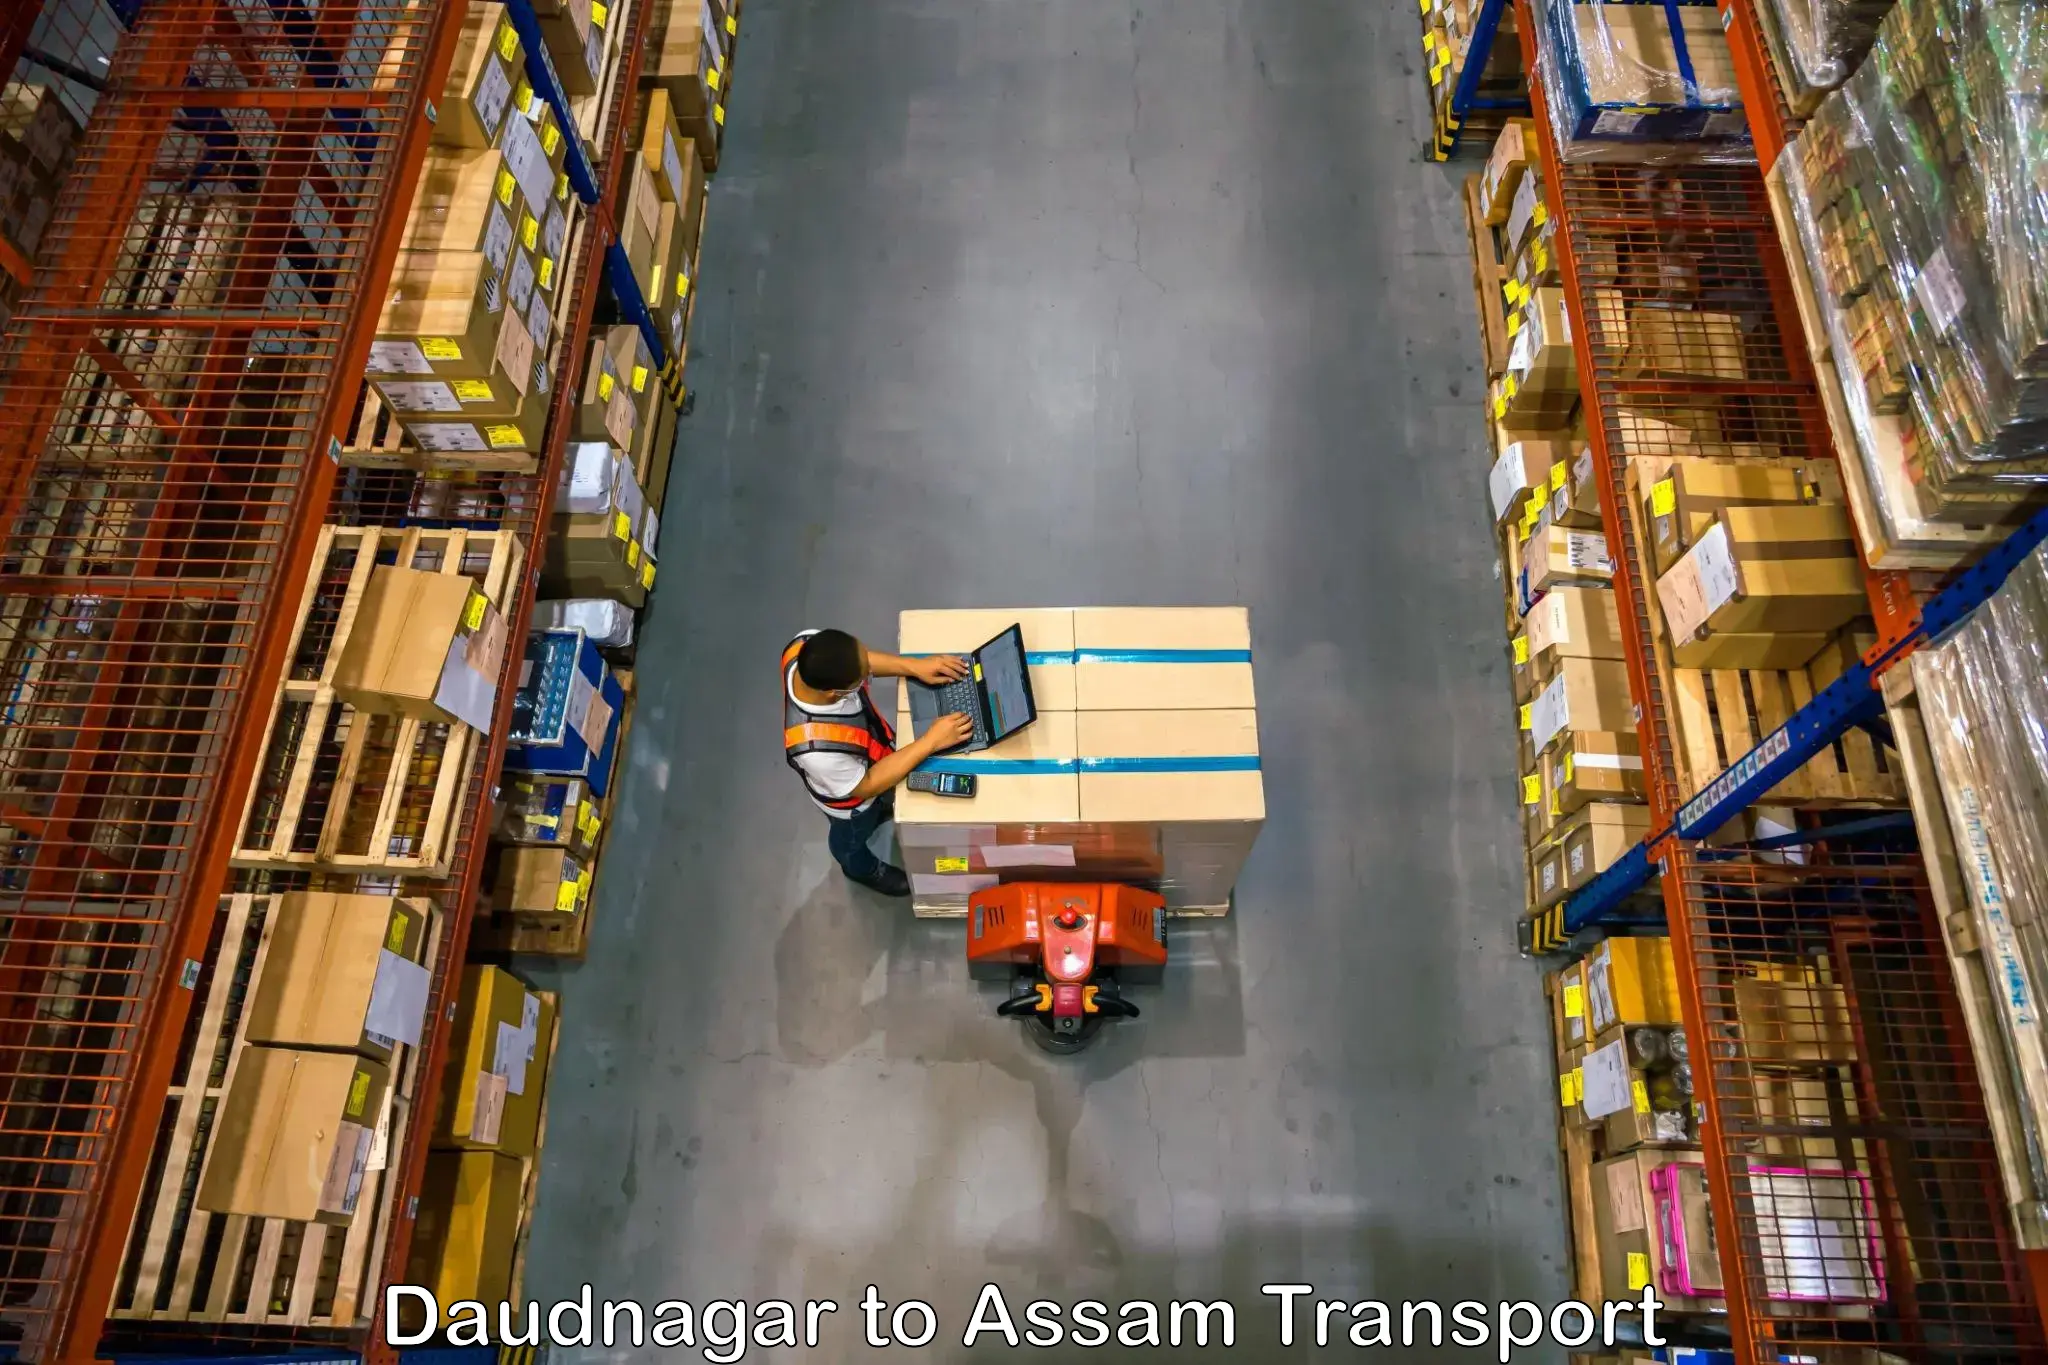 Air freight transport services Daudnagar to Rangia